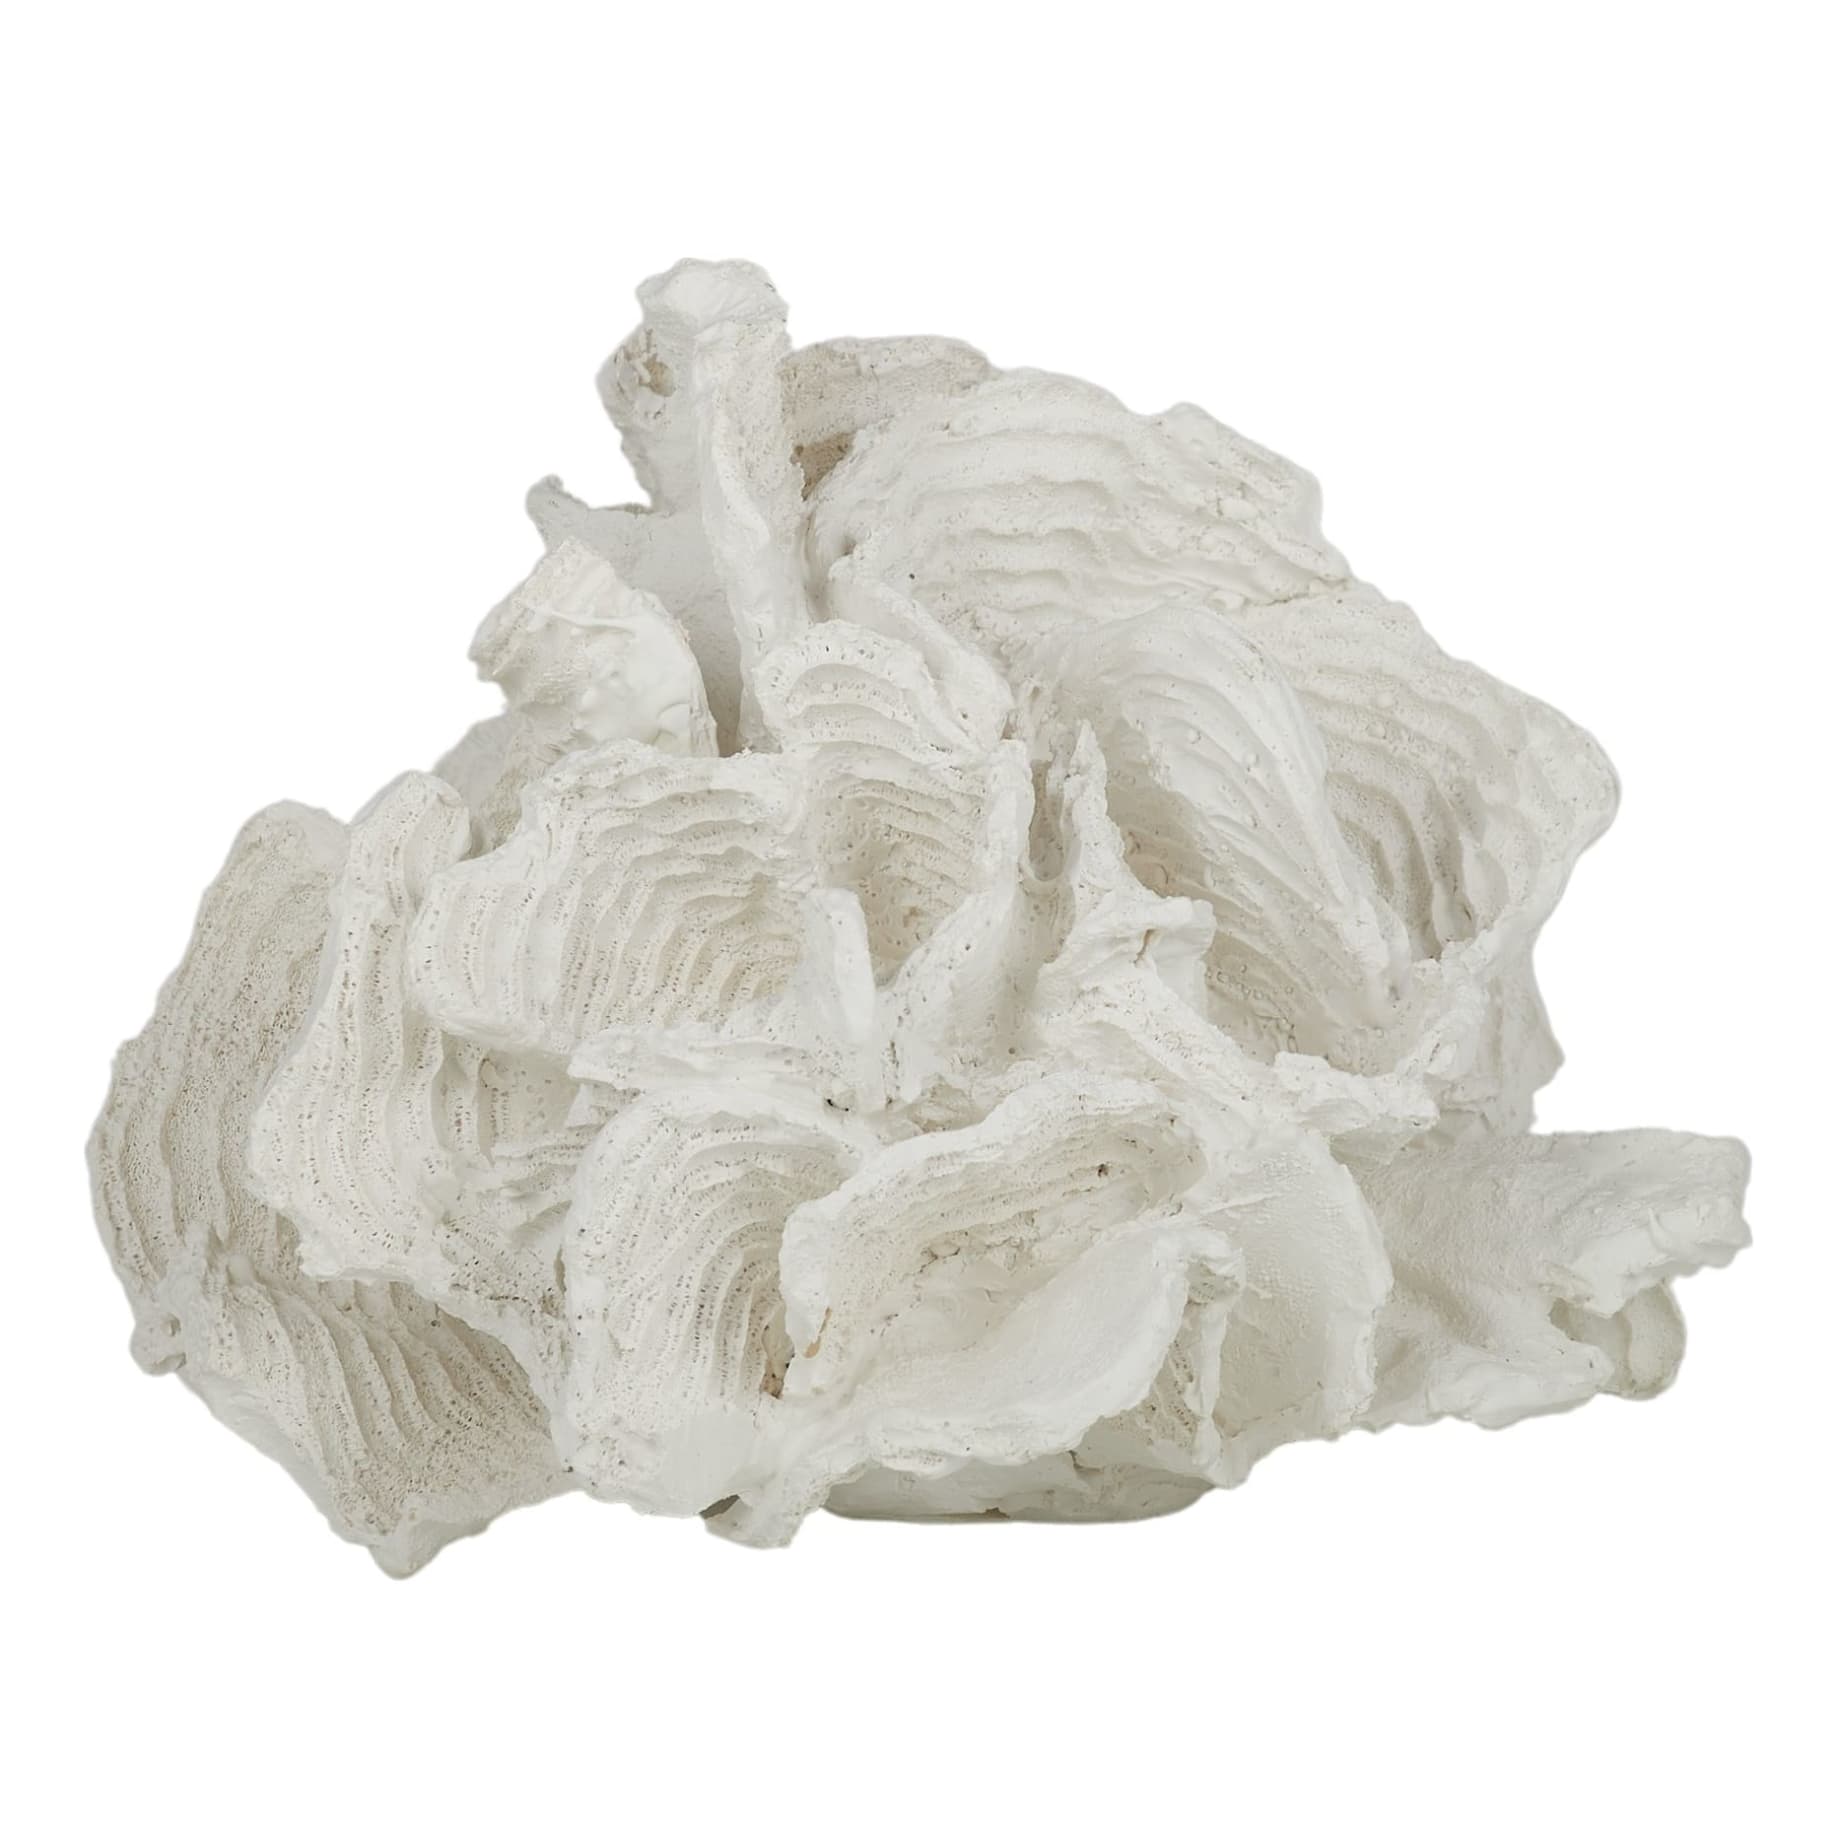 Foliose Coral Sculpture 20x16cm in White